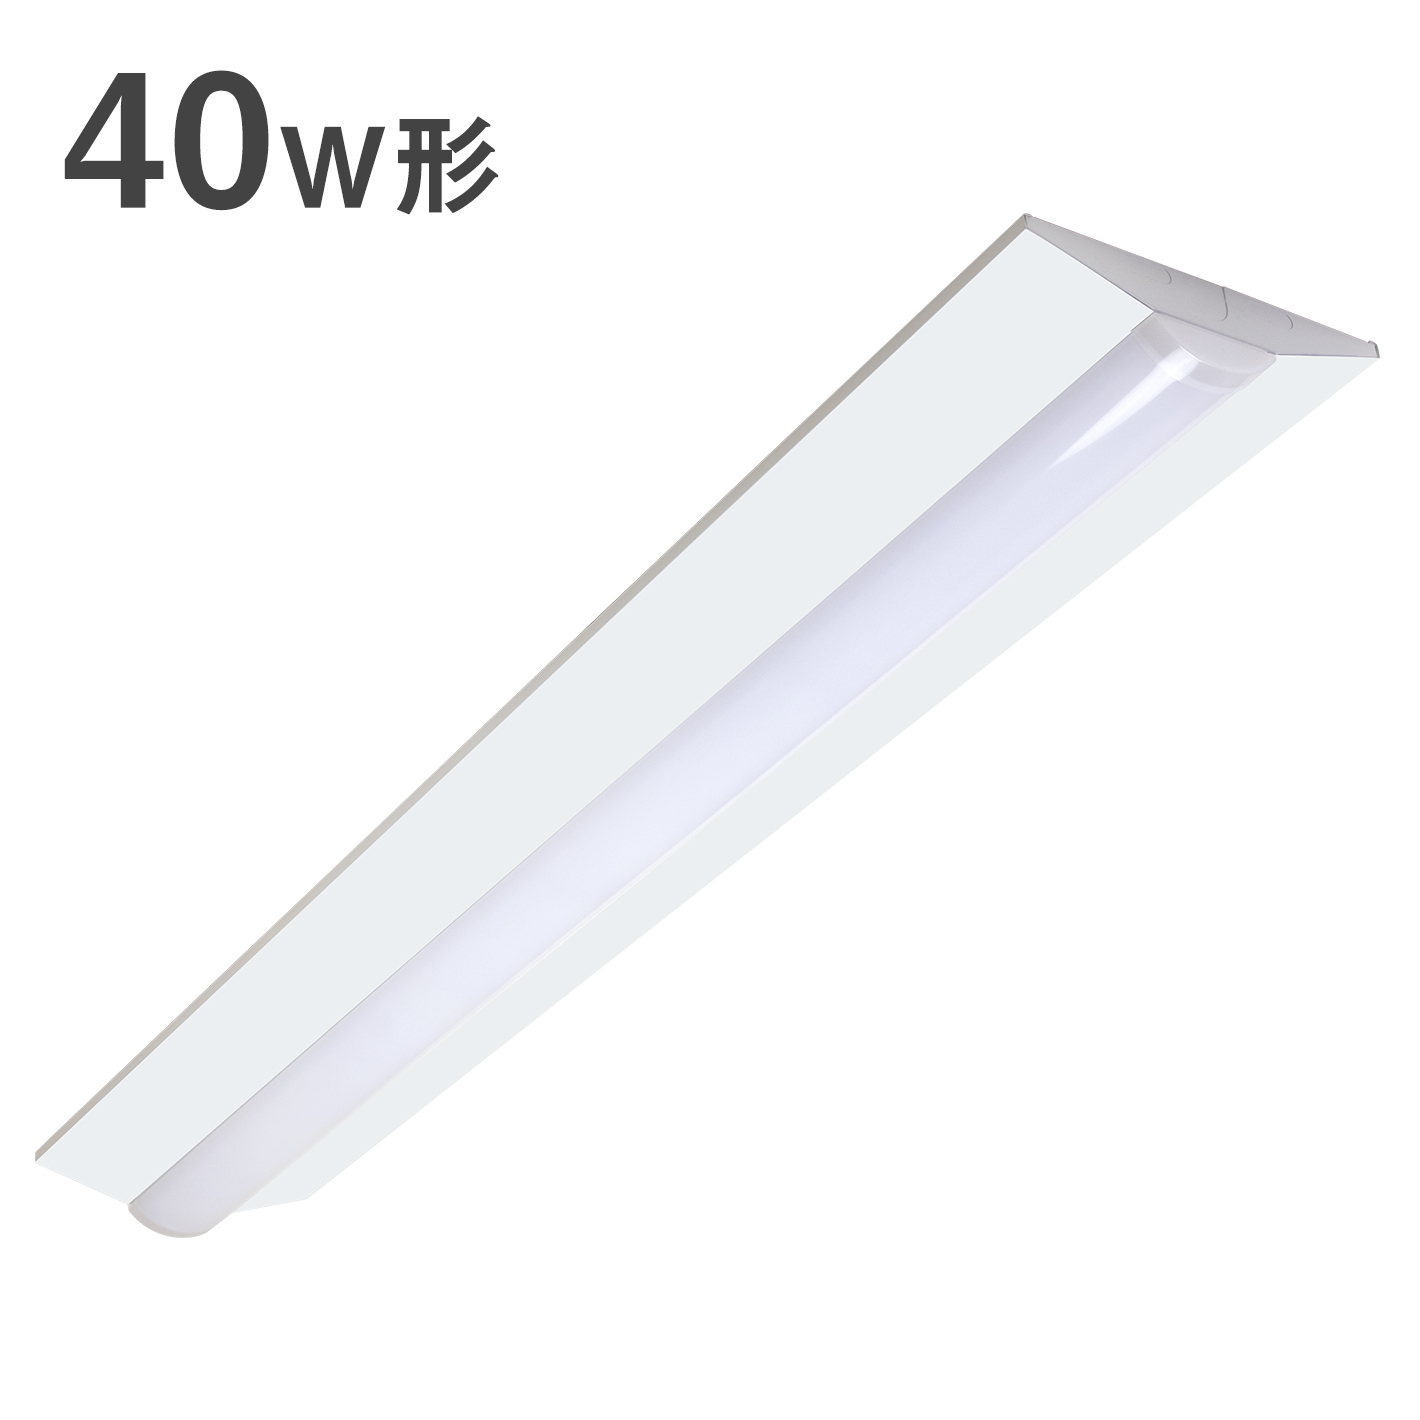 共同照明LED専門店-【GT-RGD-30WN1-2】逆富士型 LEDベースライト 40W形 2灯相当 昼白色 4200lm 直管LED 器具一体型 